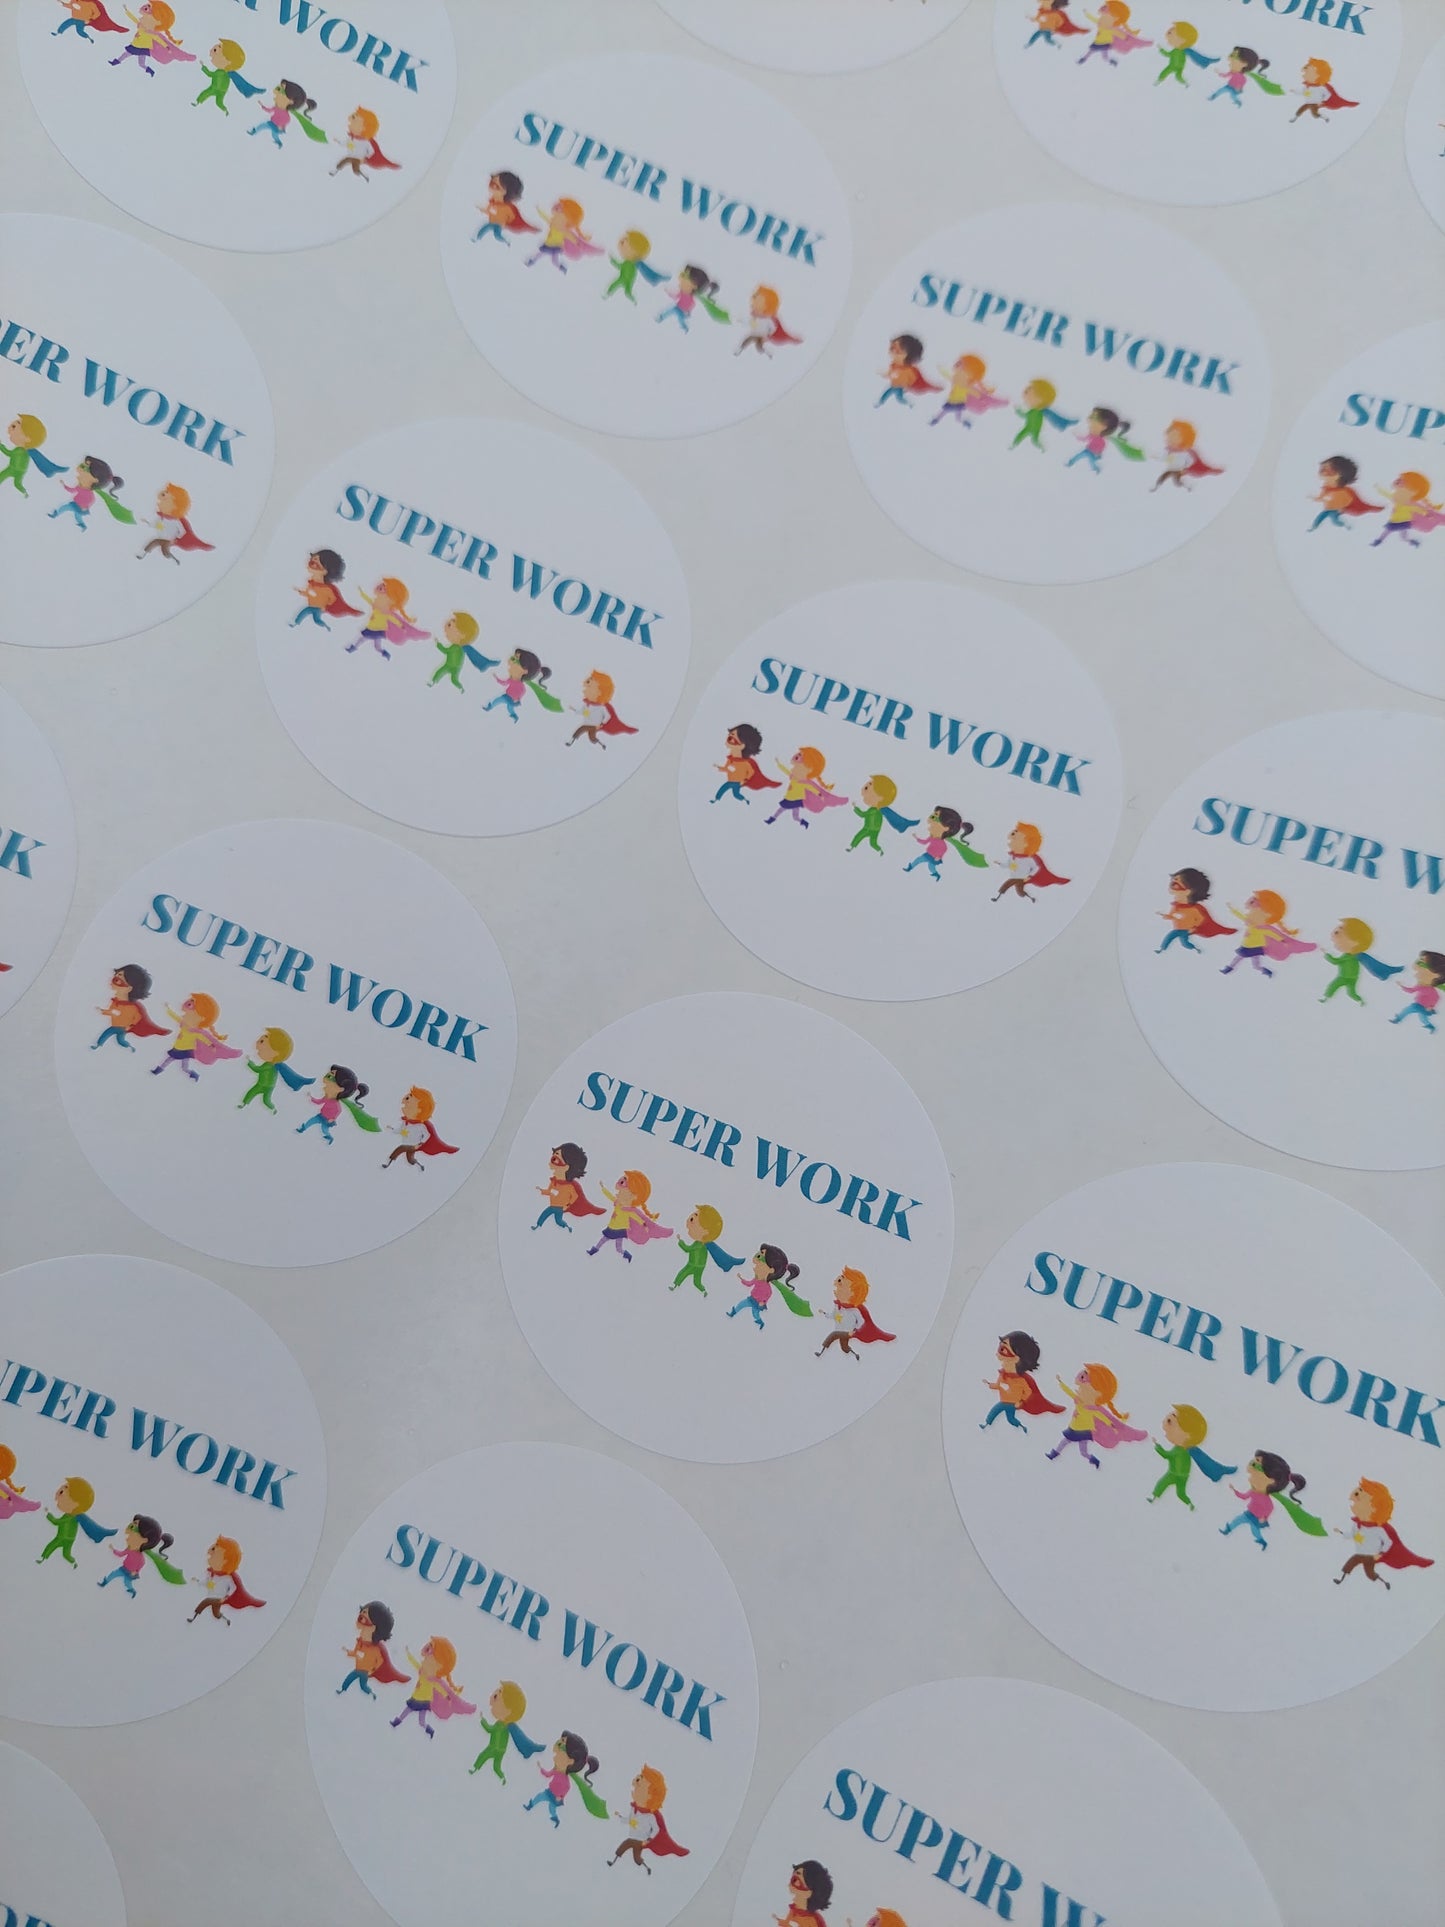 Teacher Stickers | Sticker Sheet 45mm Circles | Super Work | Circle Stickers | Sticker Sheet | Classroom Stickers